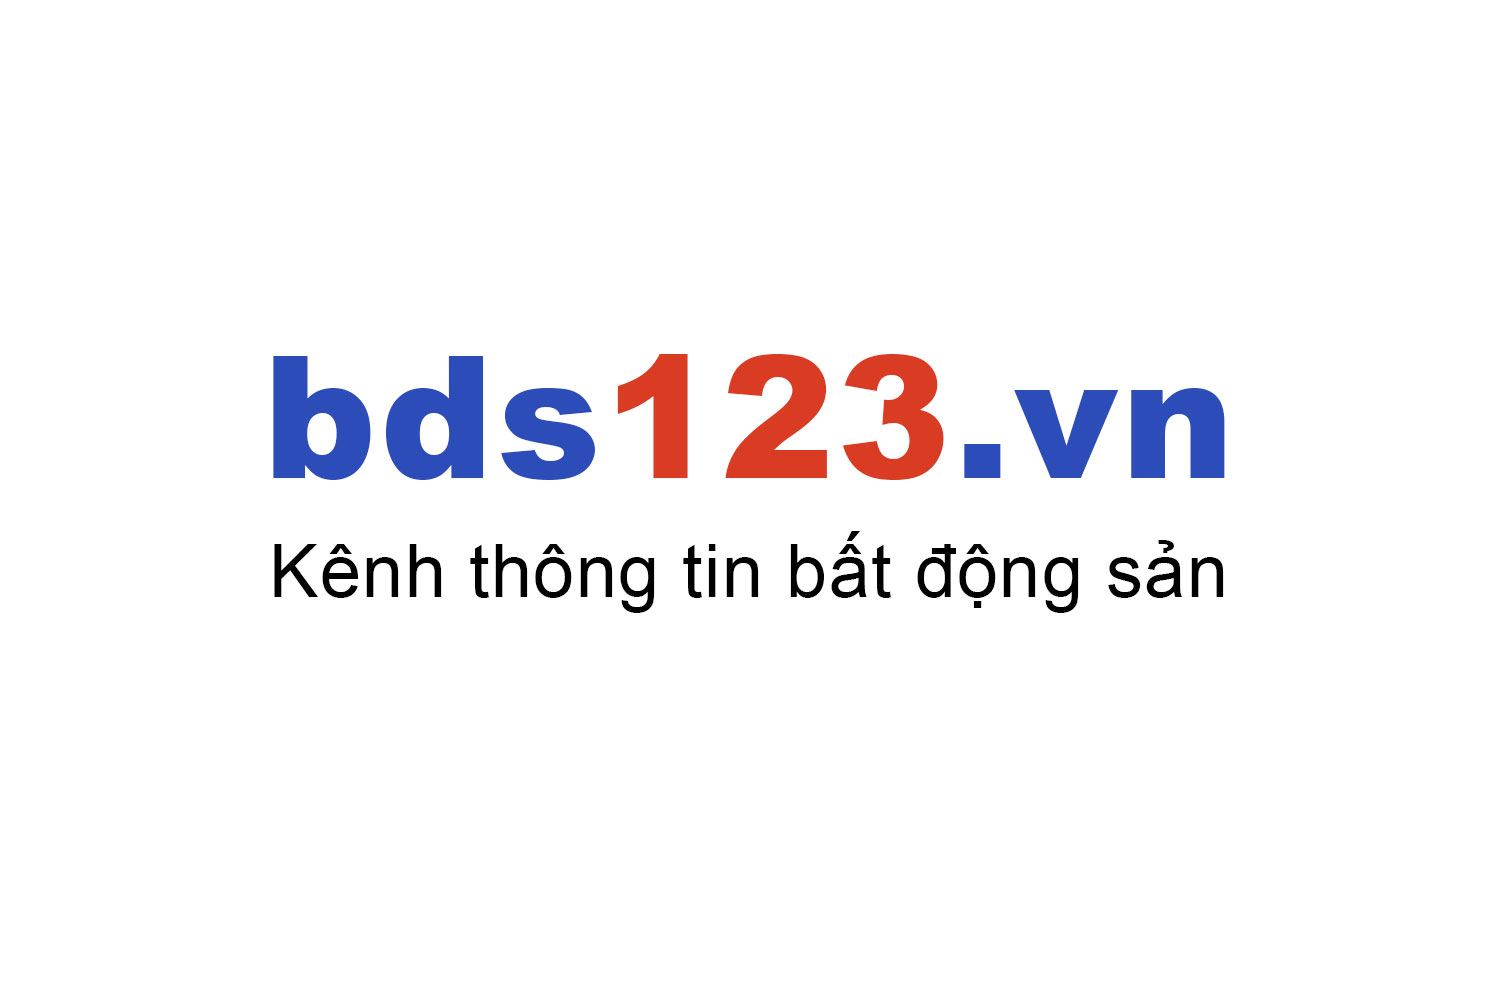 Mua bán chung cư Văn Phú Victoria ưu đãi giá tốt T10/2022 - Bds123.vn